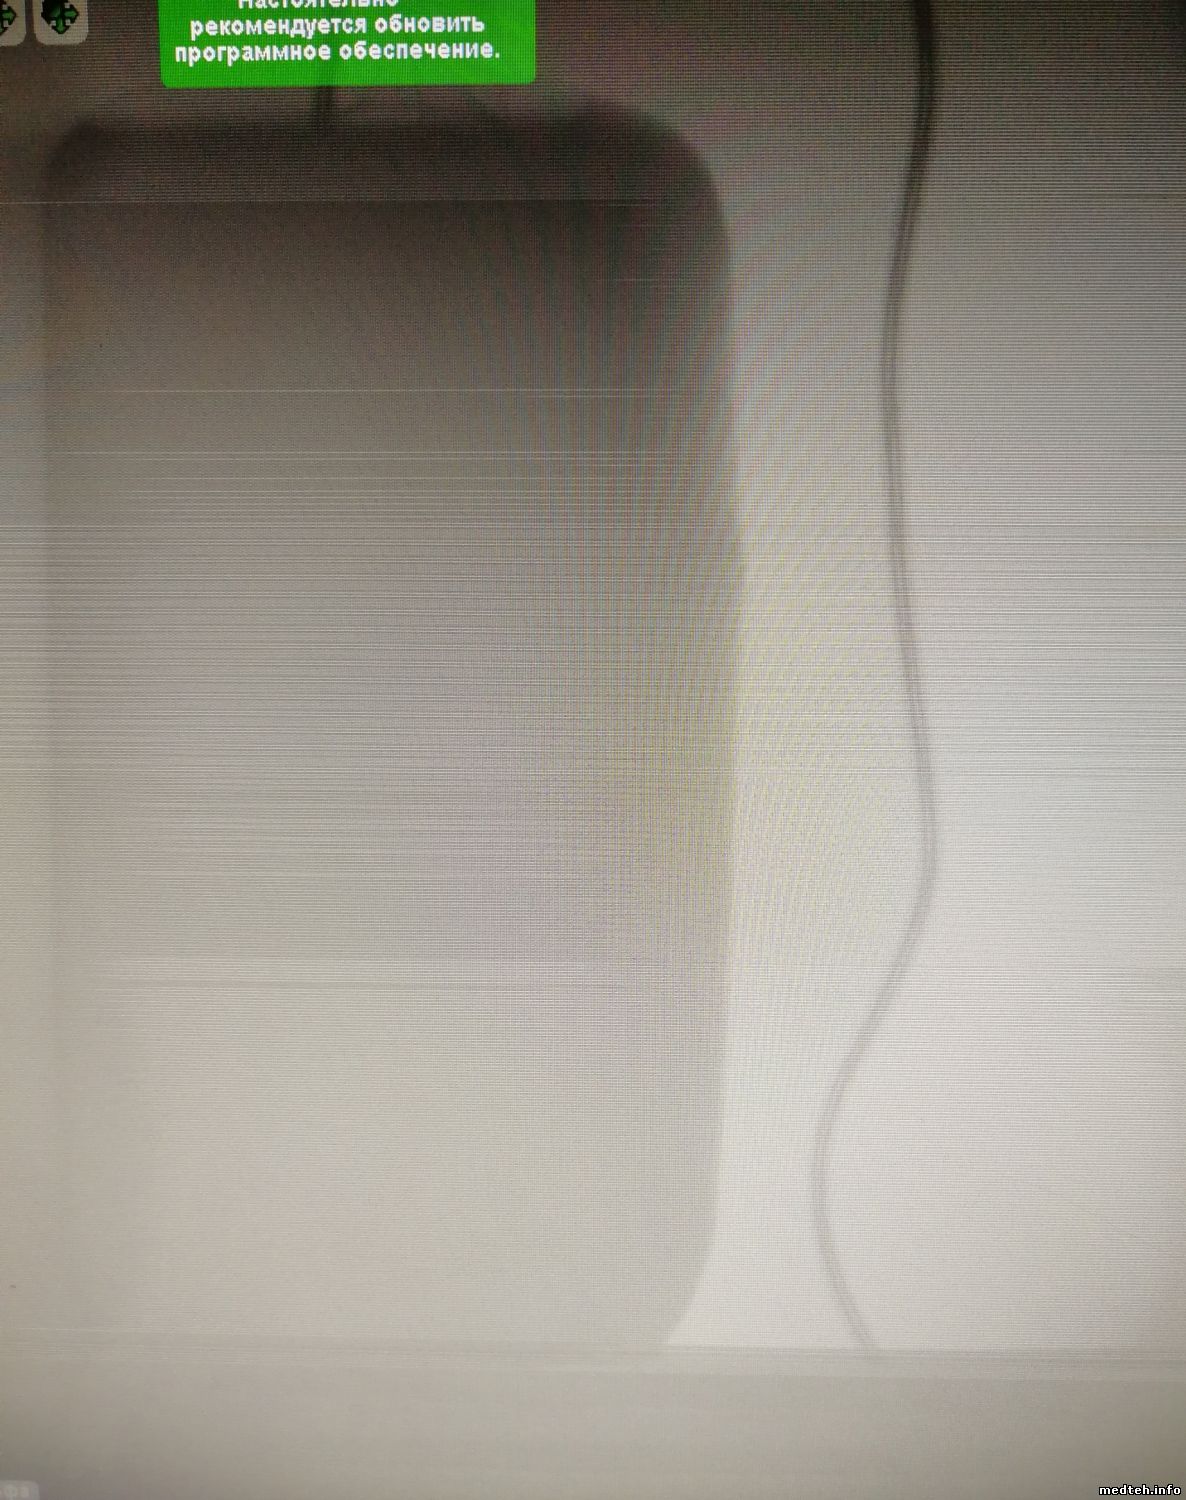 Мутное изображение монитора видеодомофона. Плохое качество экрана